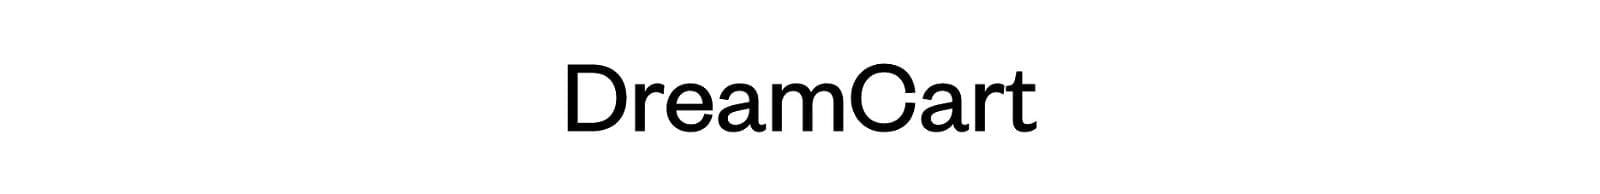 DreamCart